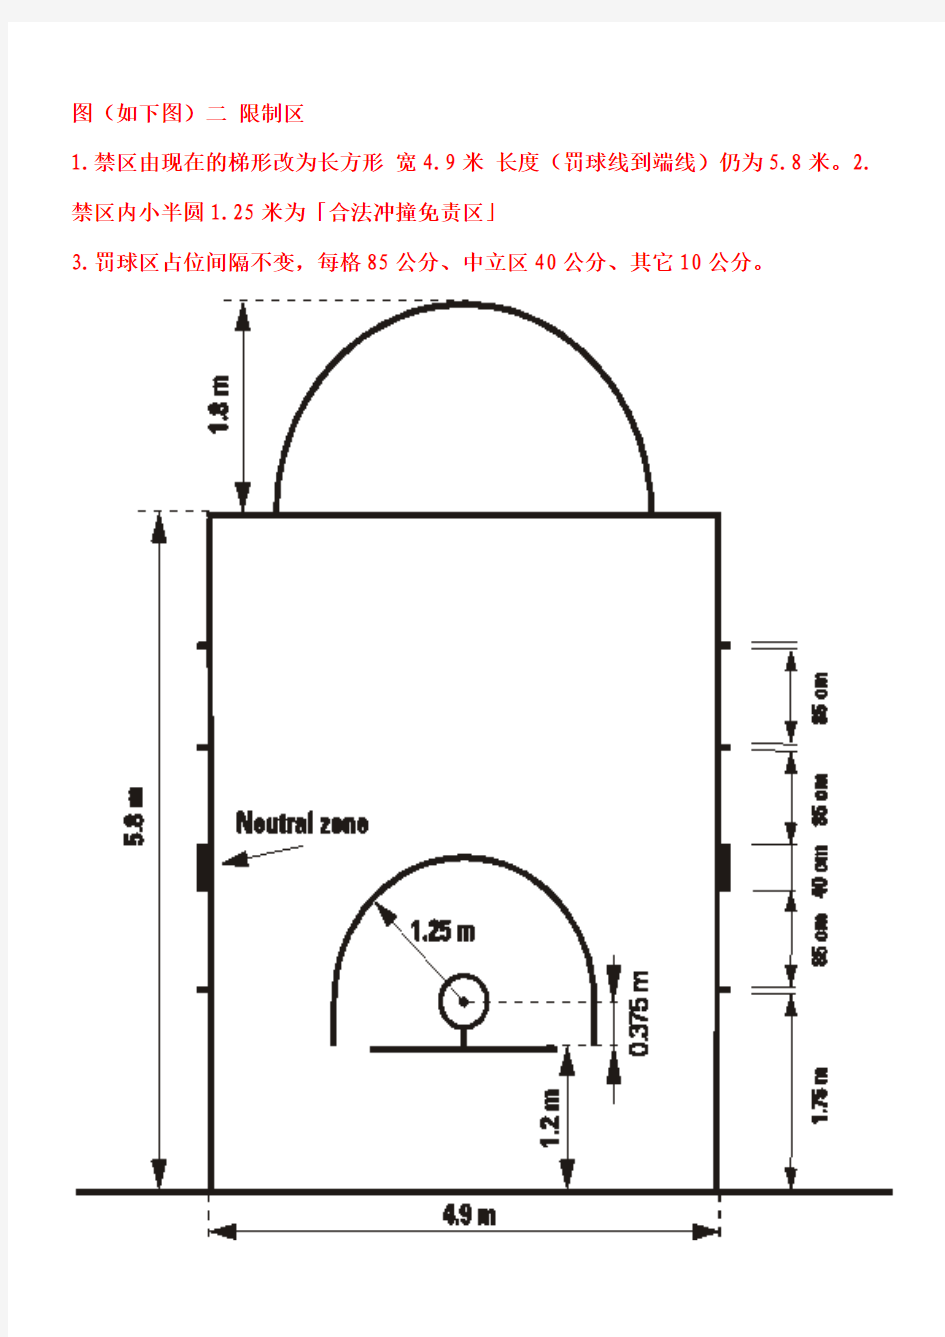 国际篮联新标准篮球场标准尺寸及说明2013